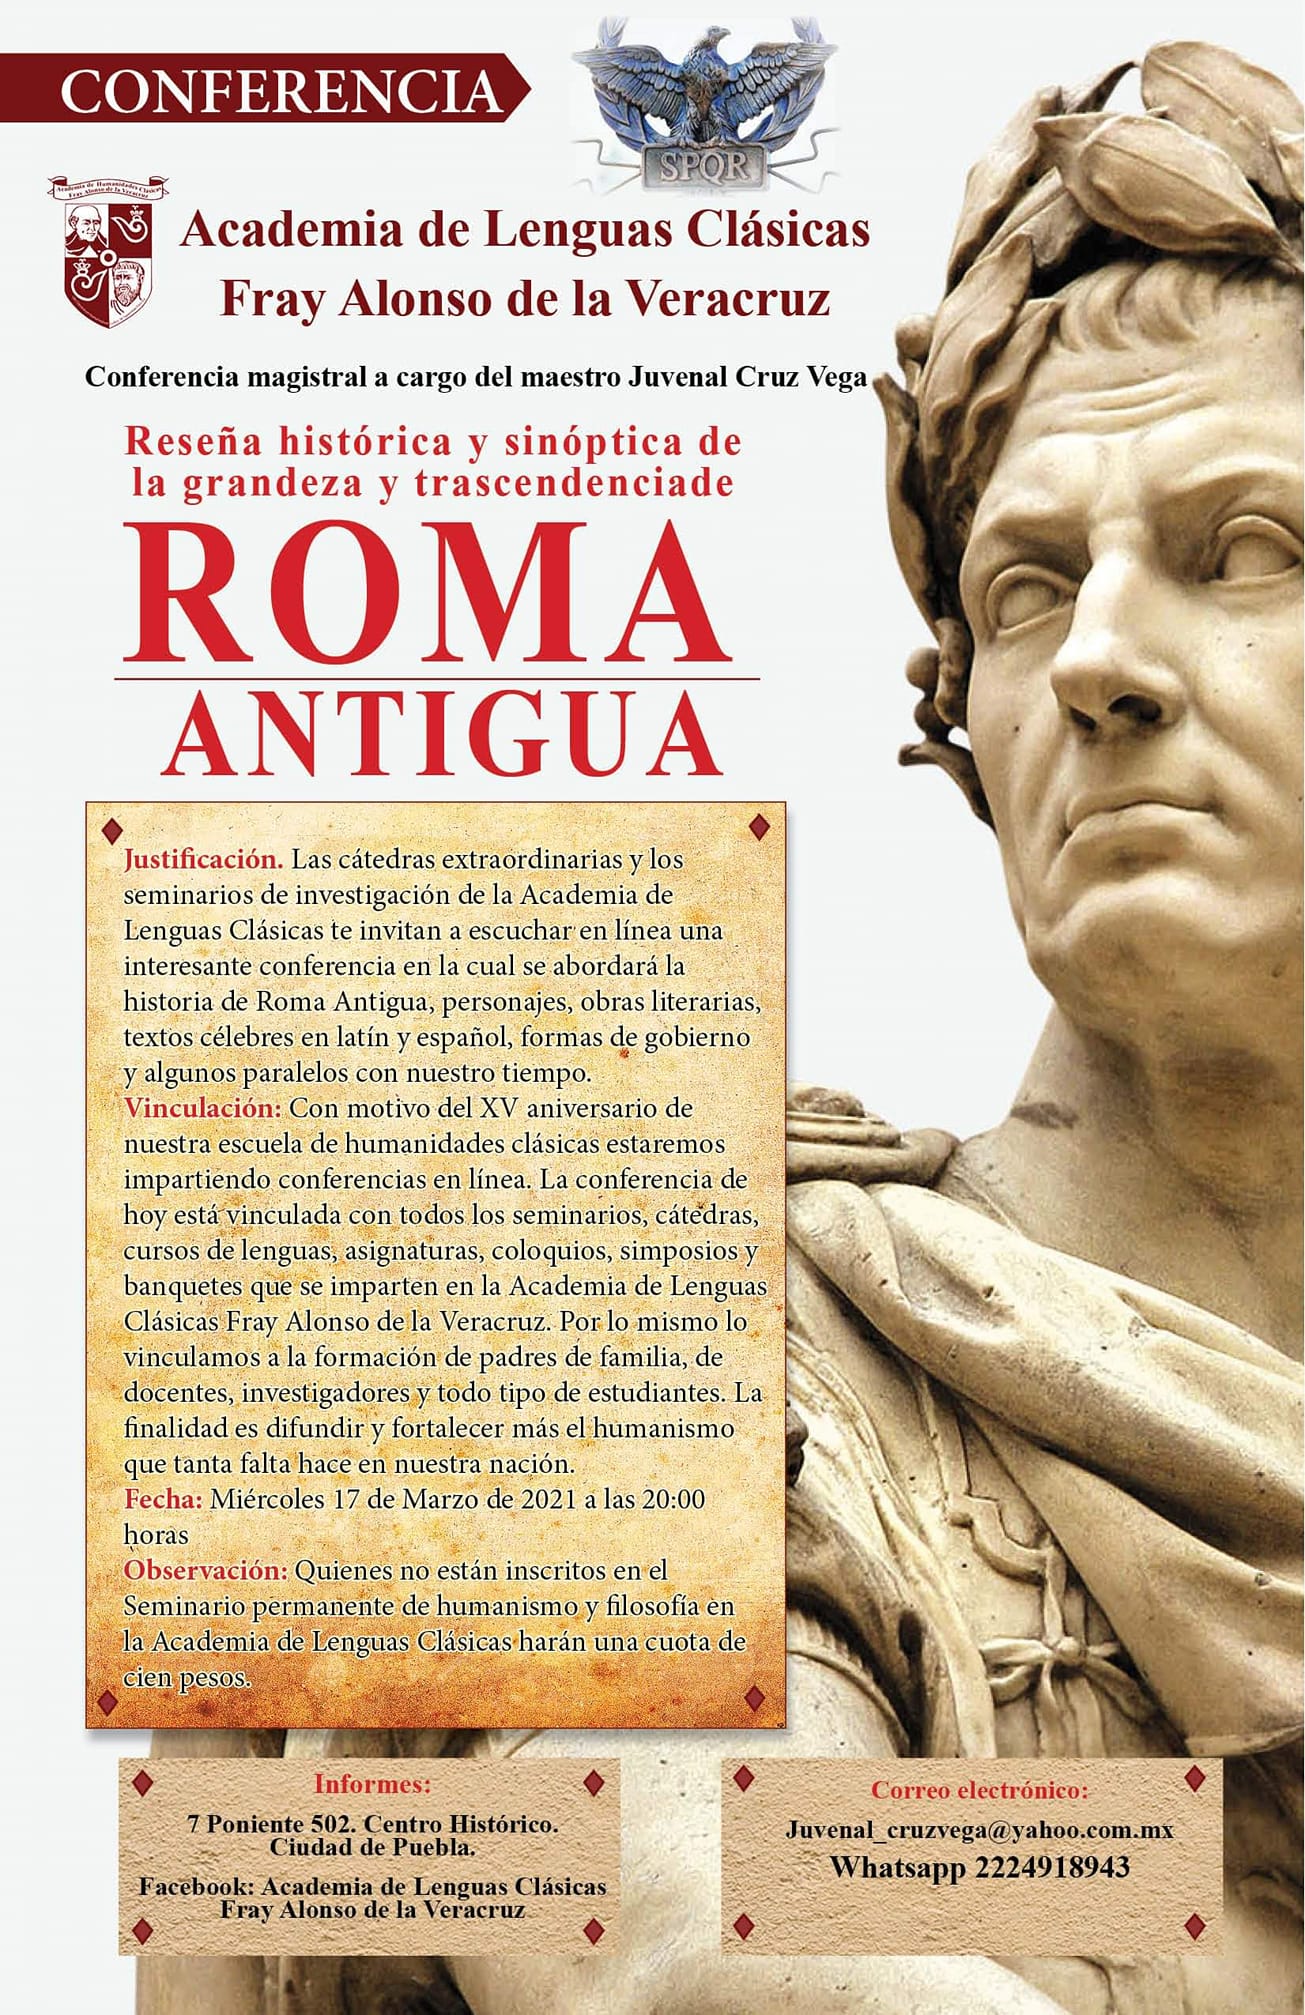 Conferencia Magistral sobre Roma Antigua.   XV Aniversario de la Academia de Lenguas Clásicas Fray Alonso de la Veracruz